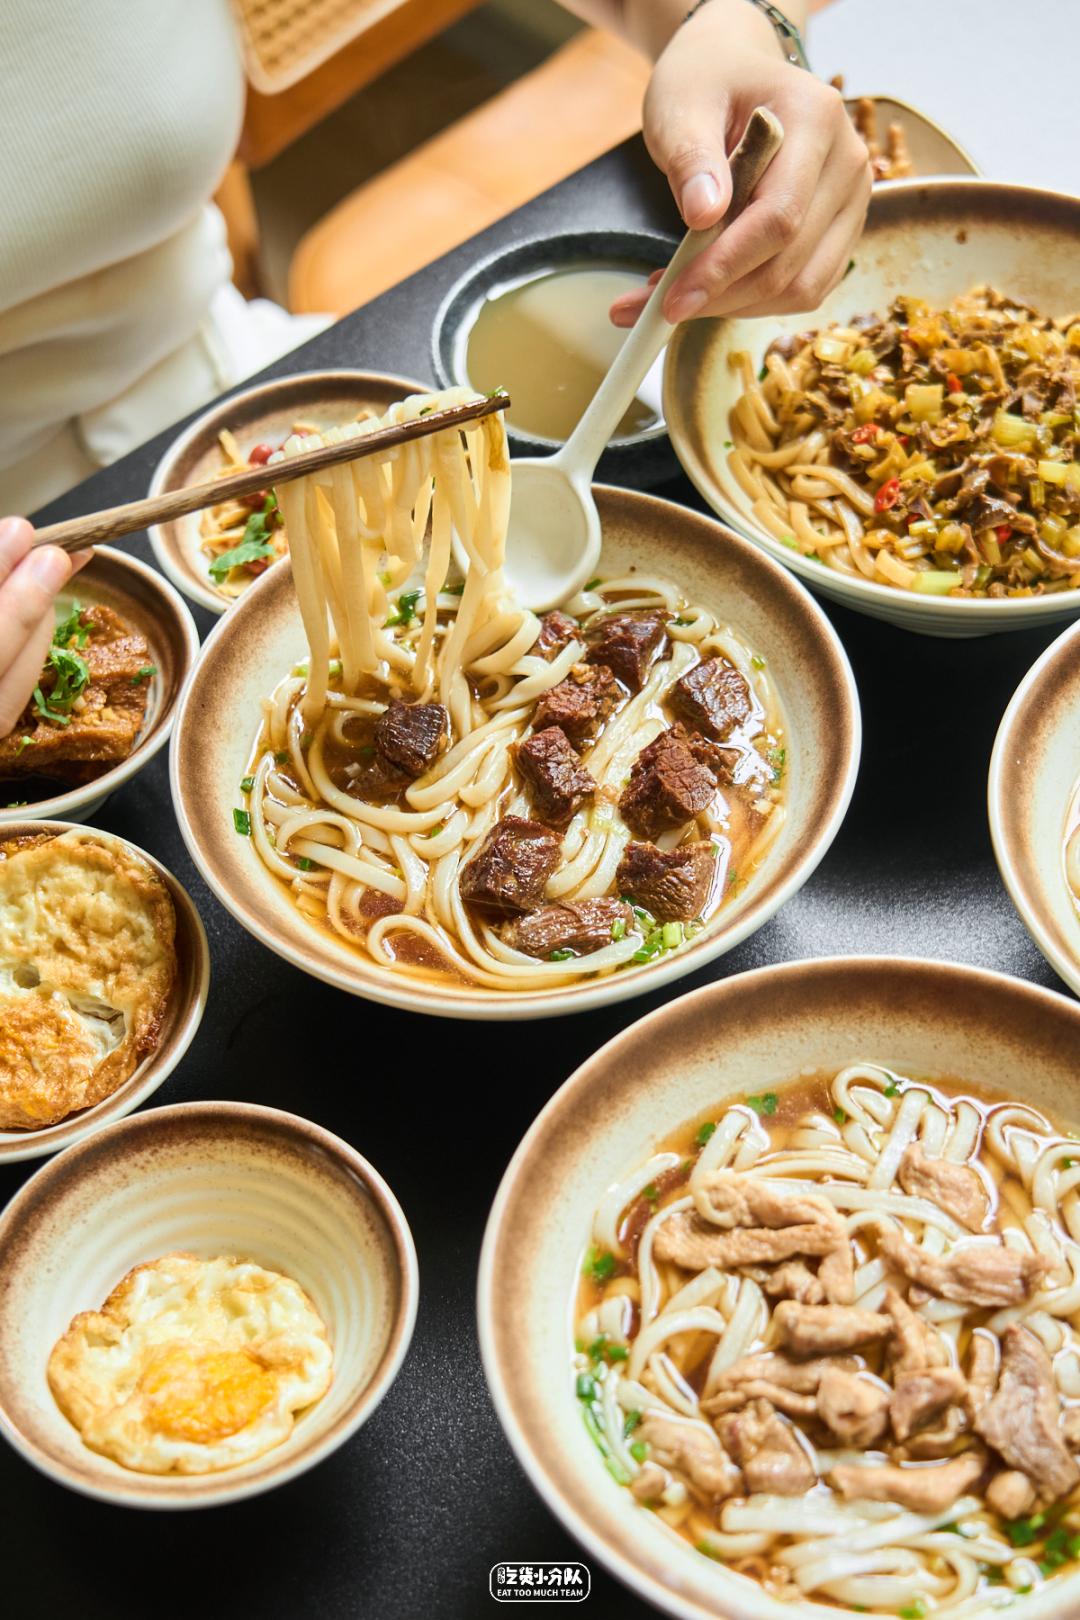 Khám phá ẩm thực vỉa hè của các bà dì Thượng Hải: Những quầy hàng gắn liền với tuổi thơ bao thế hệ - ảnh 29